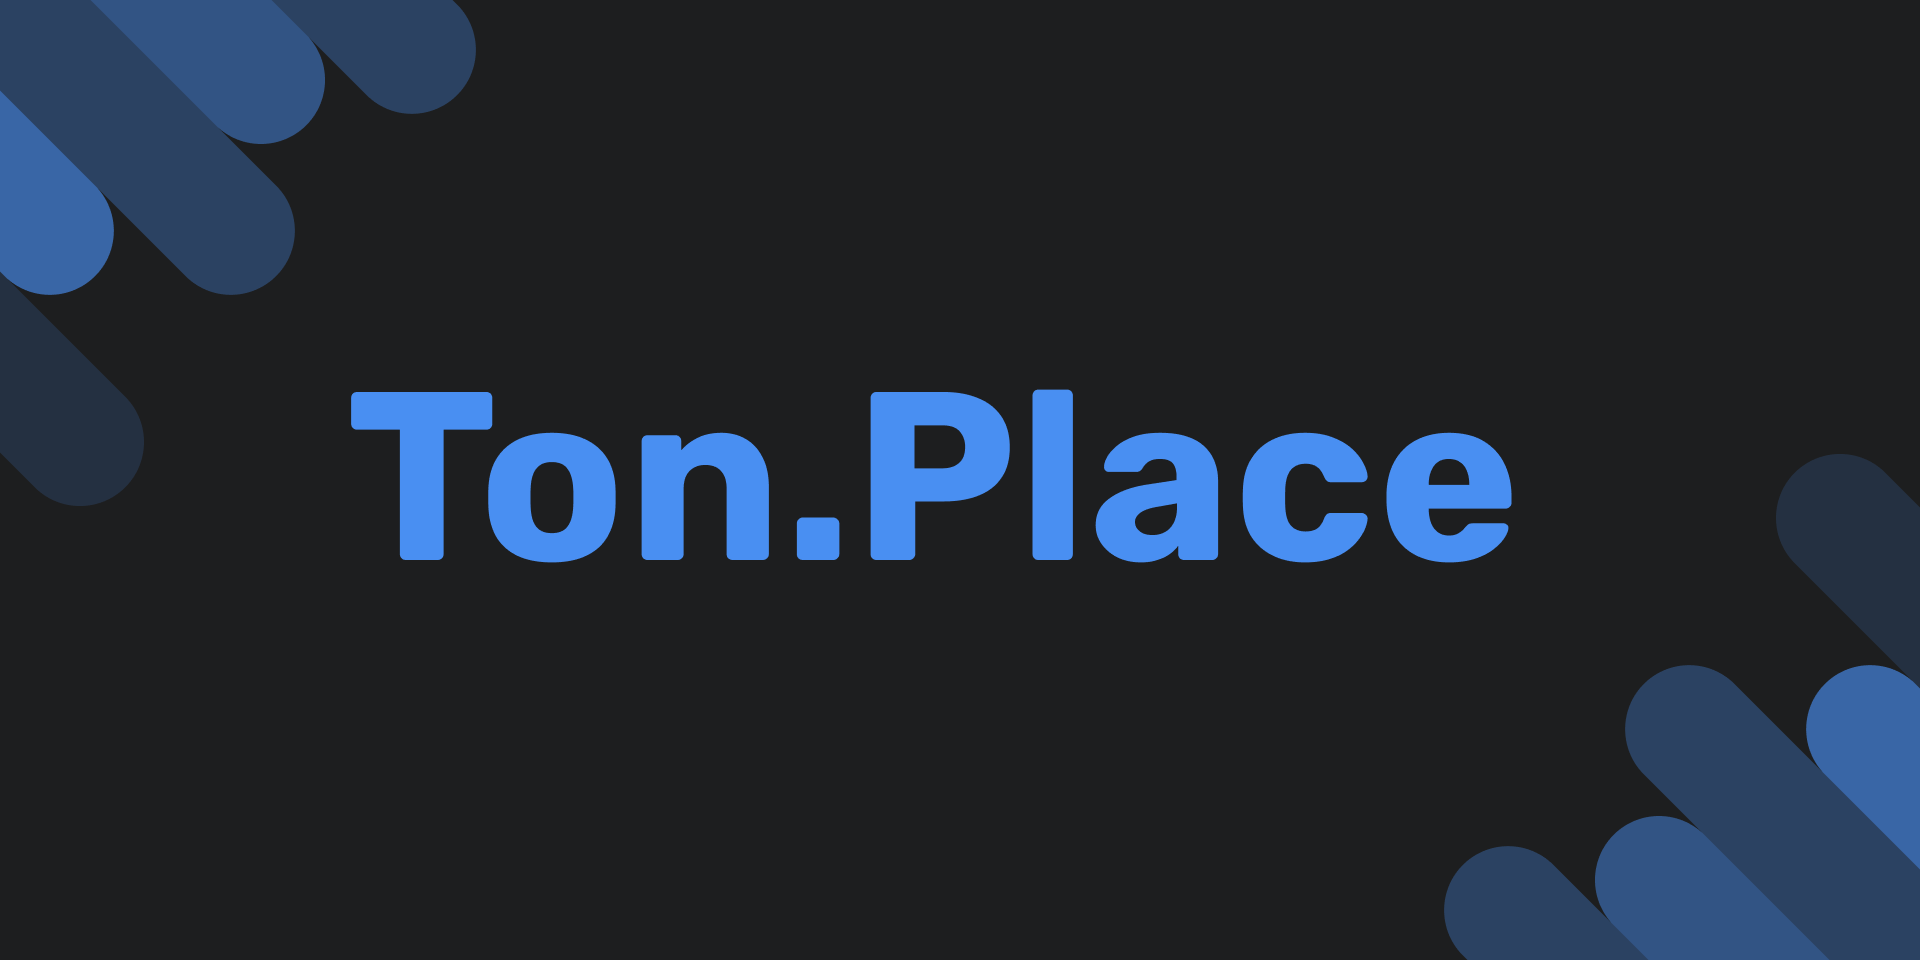 ton place عبارة عن شبكة اجتماعية ذات اشتراك